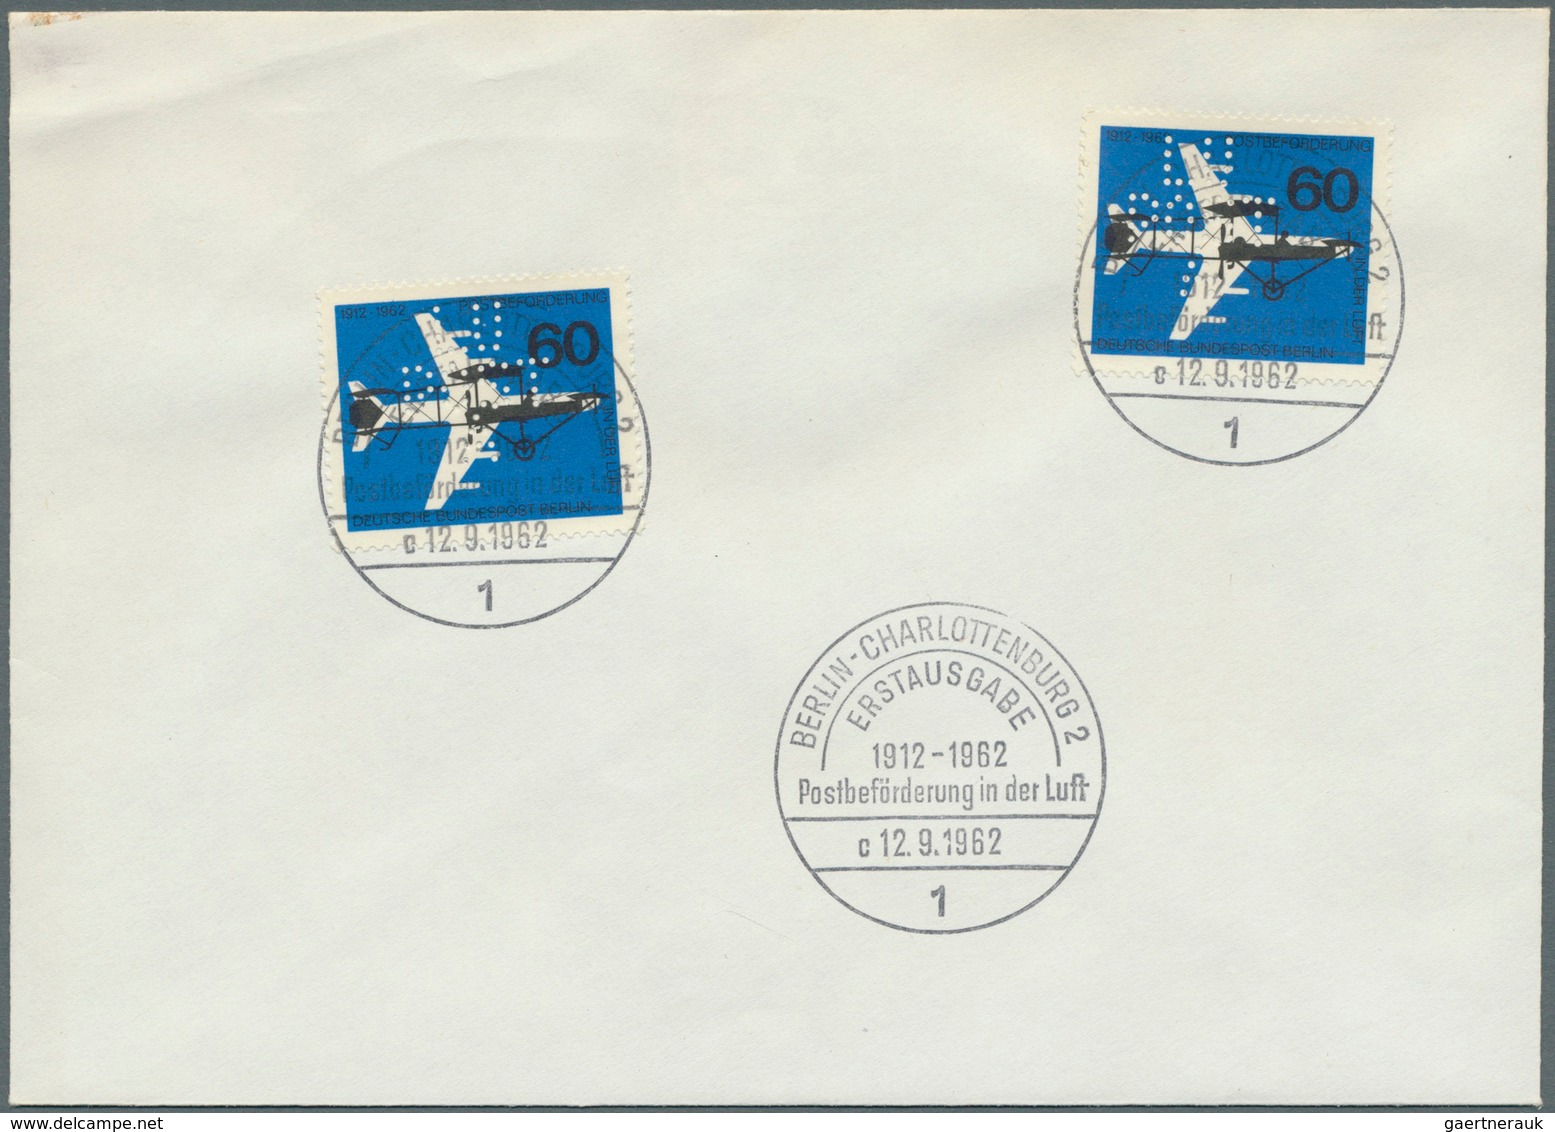 Berlin - Besonderheiten: 1962, LUPOSTA - Marke zur Internationale Luftpost-Ausstellung Berlin, sehr